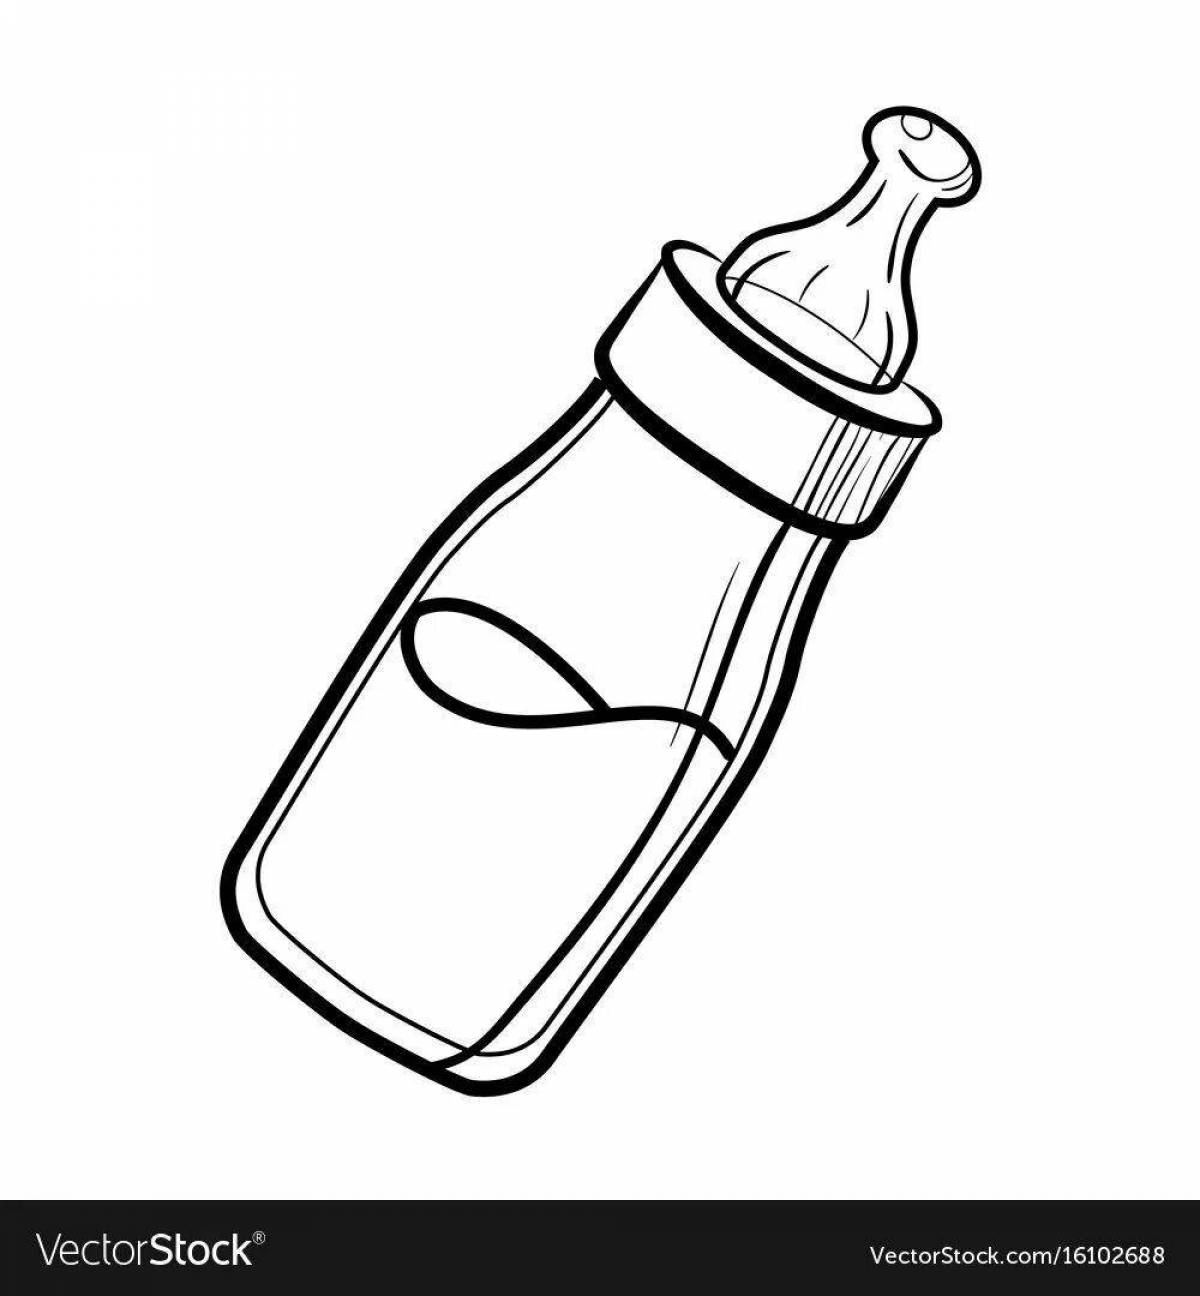 Children's bottle #10